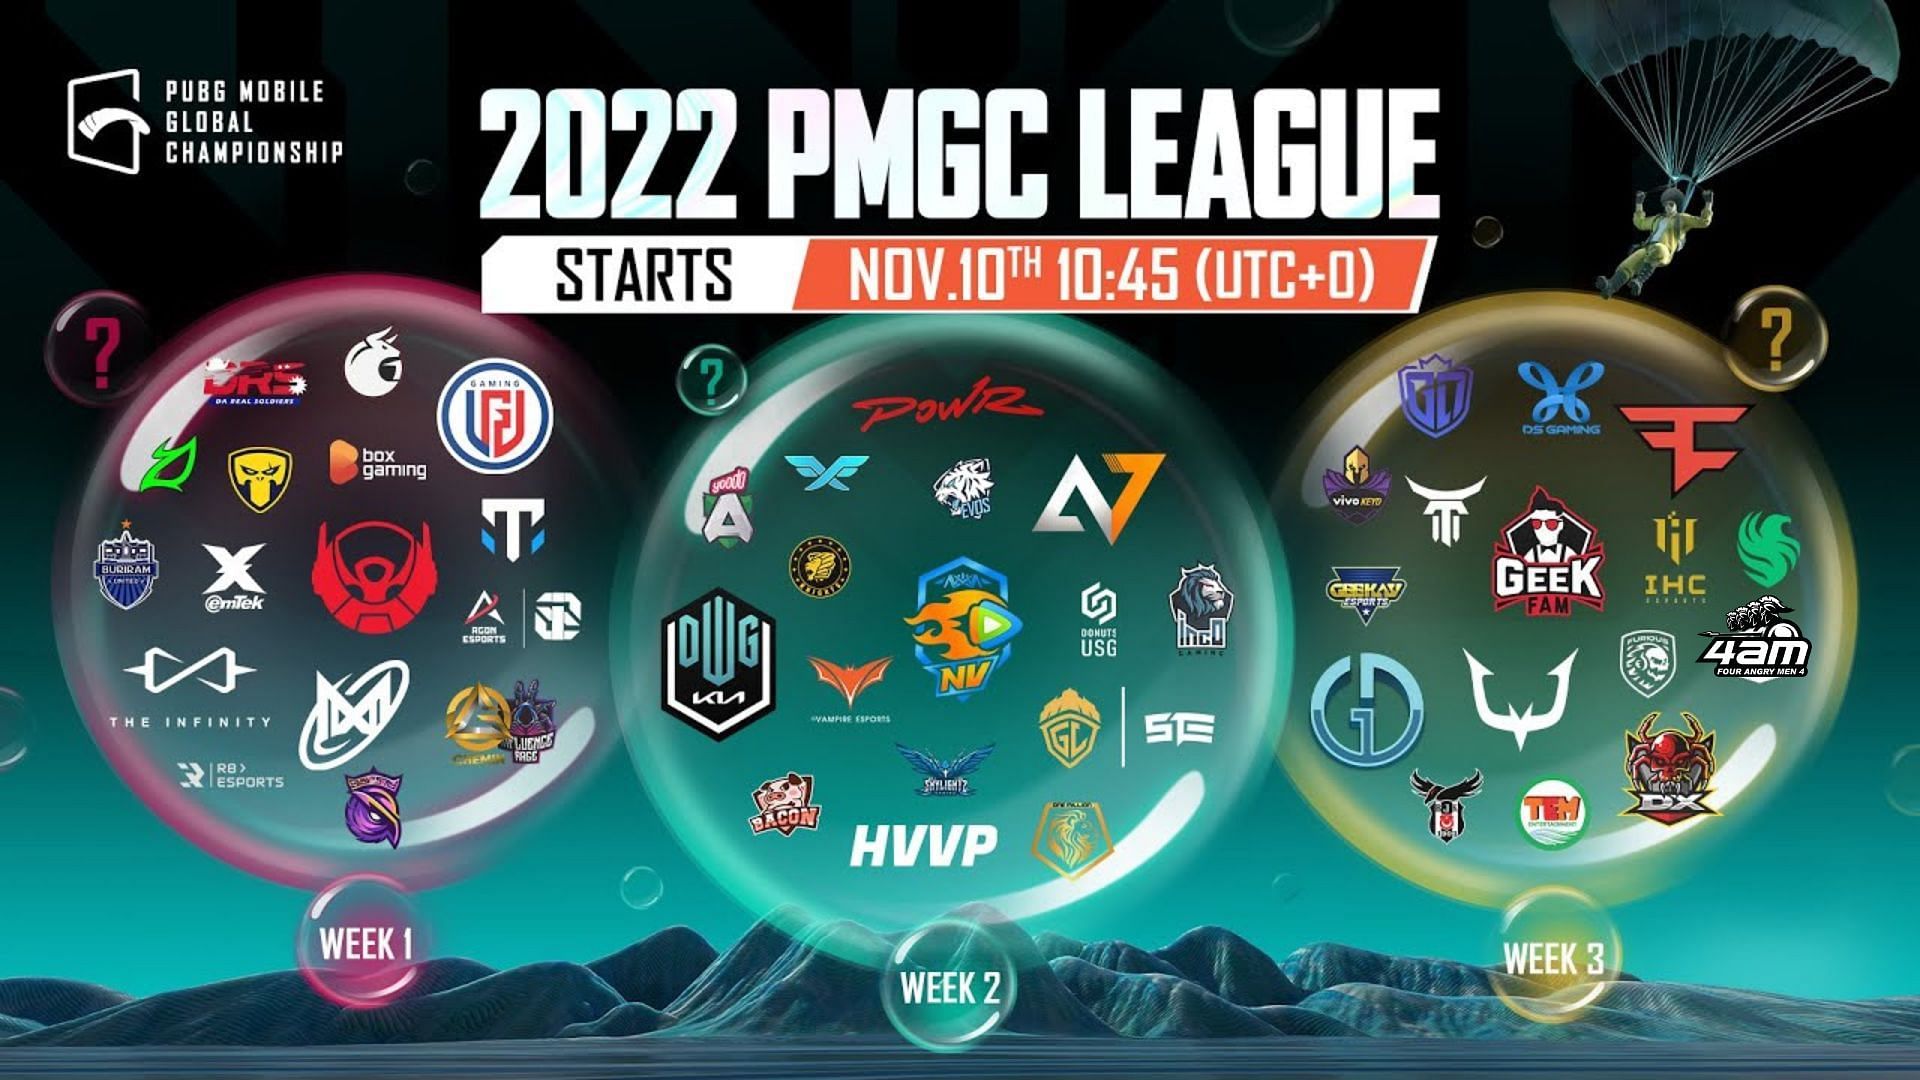 PMGC League Stage Groups (images via PUBG Mobile)